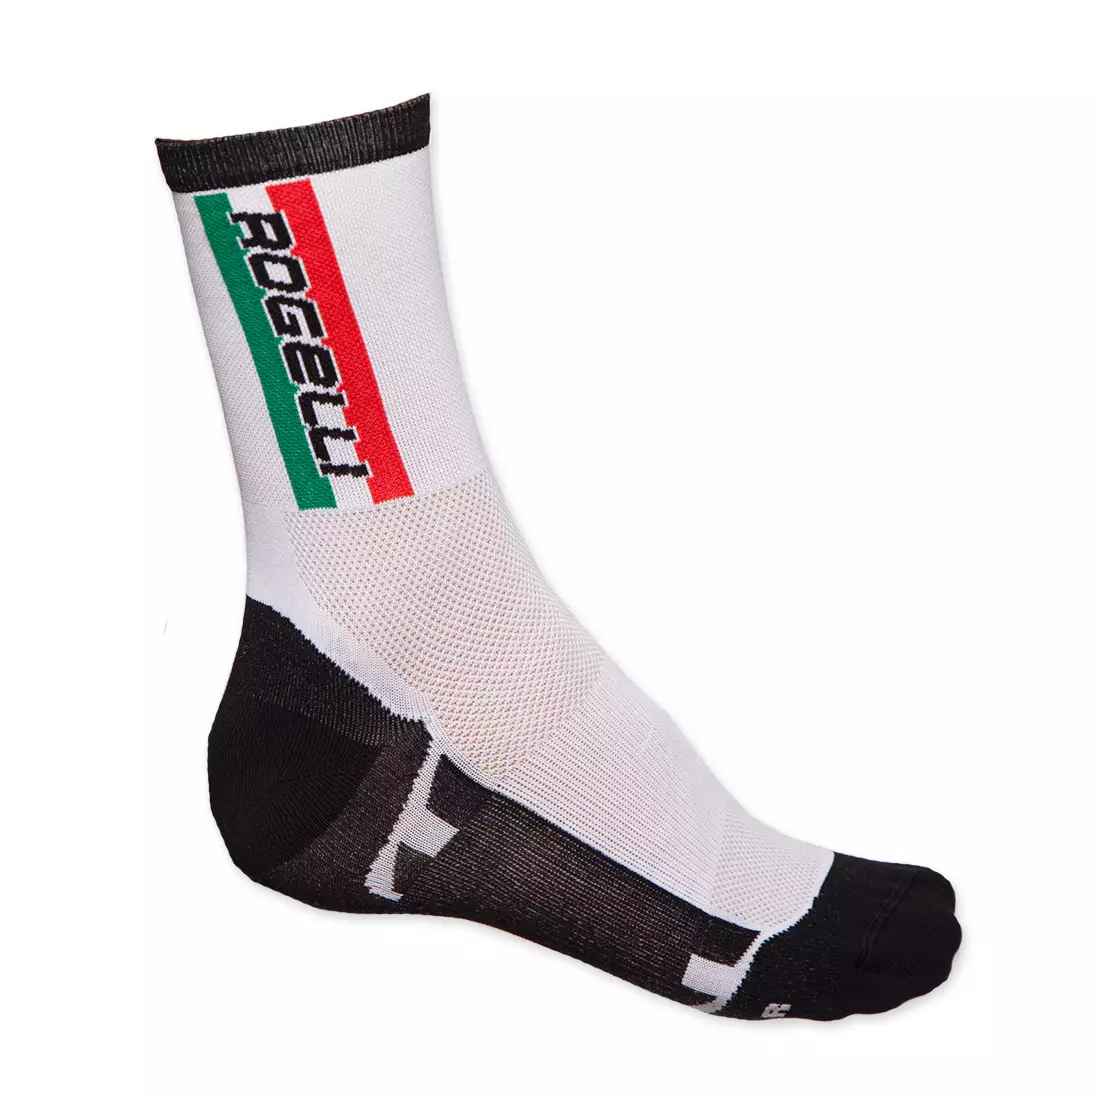 ROGELLI BIKE - TEAM - Q-skin socks 007.017